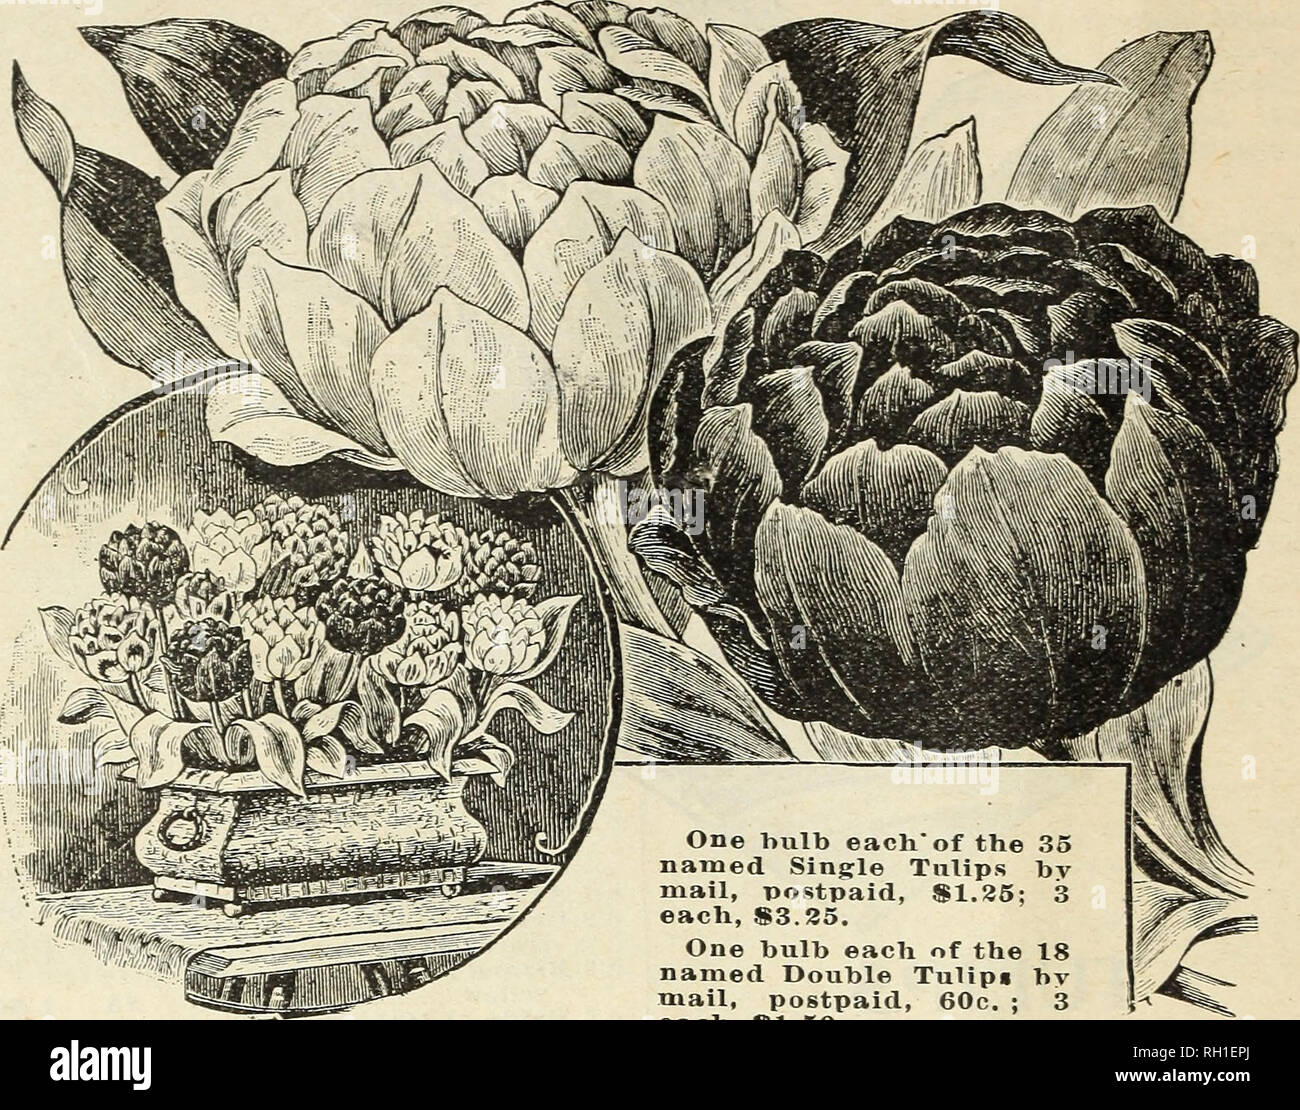 Los Bulbos Y Plantas El Otoño De 1898 Los Catálogos De